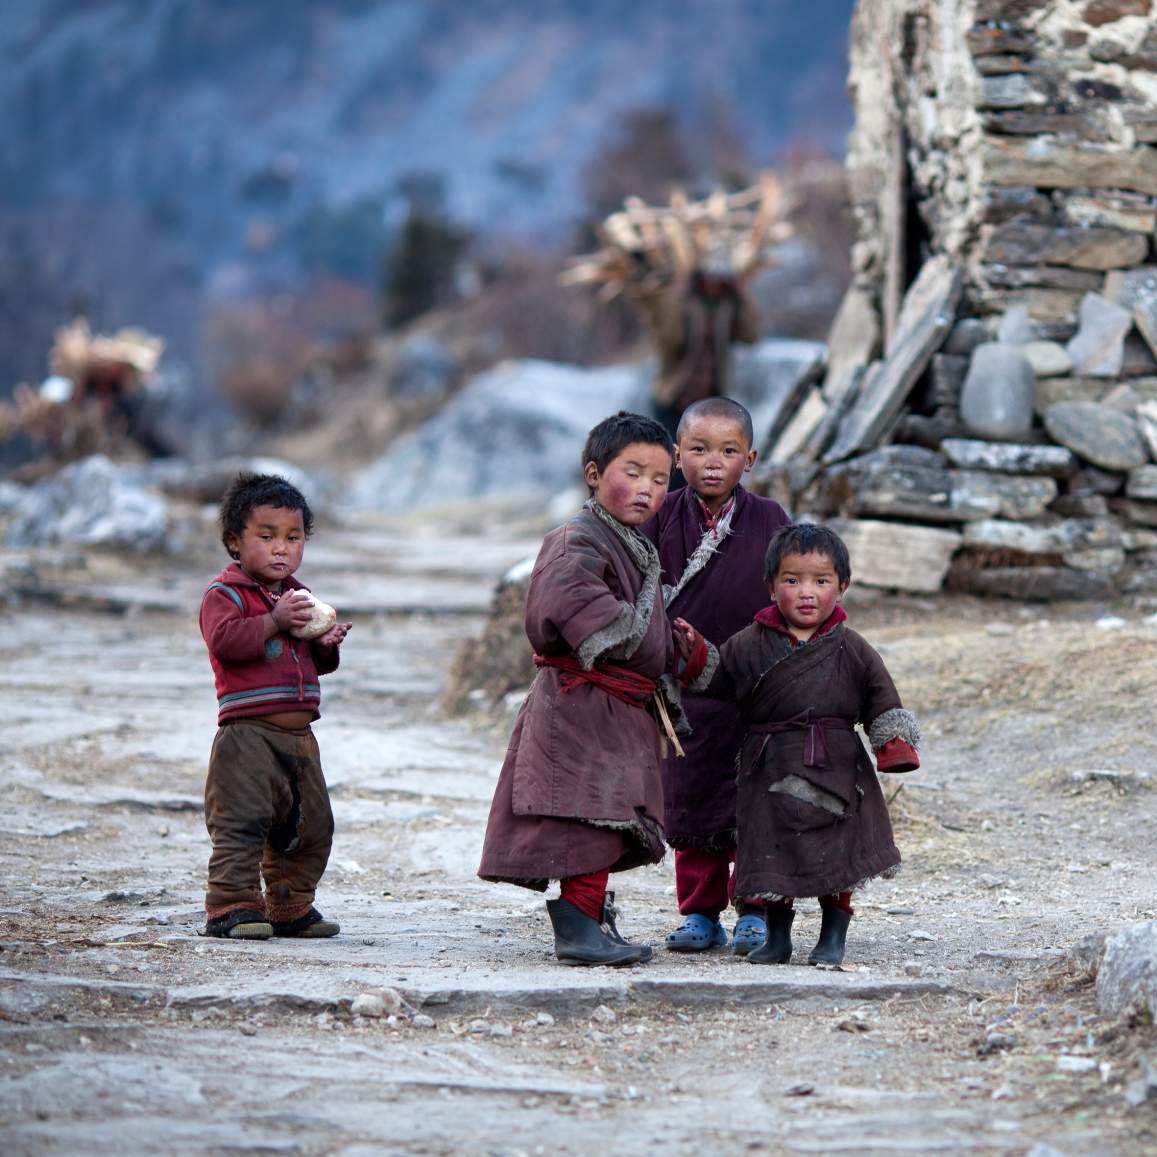 Opat barudak étnis Tibét pose pikeun poto bari maén di hiji désa Tibét.